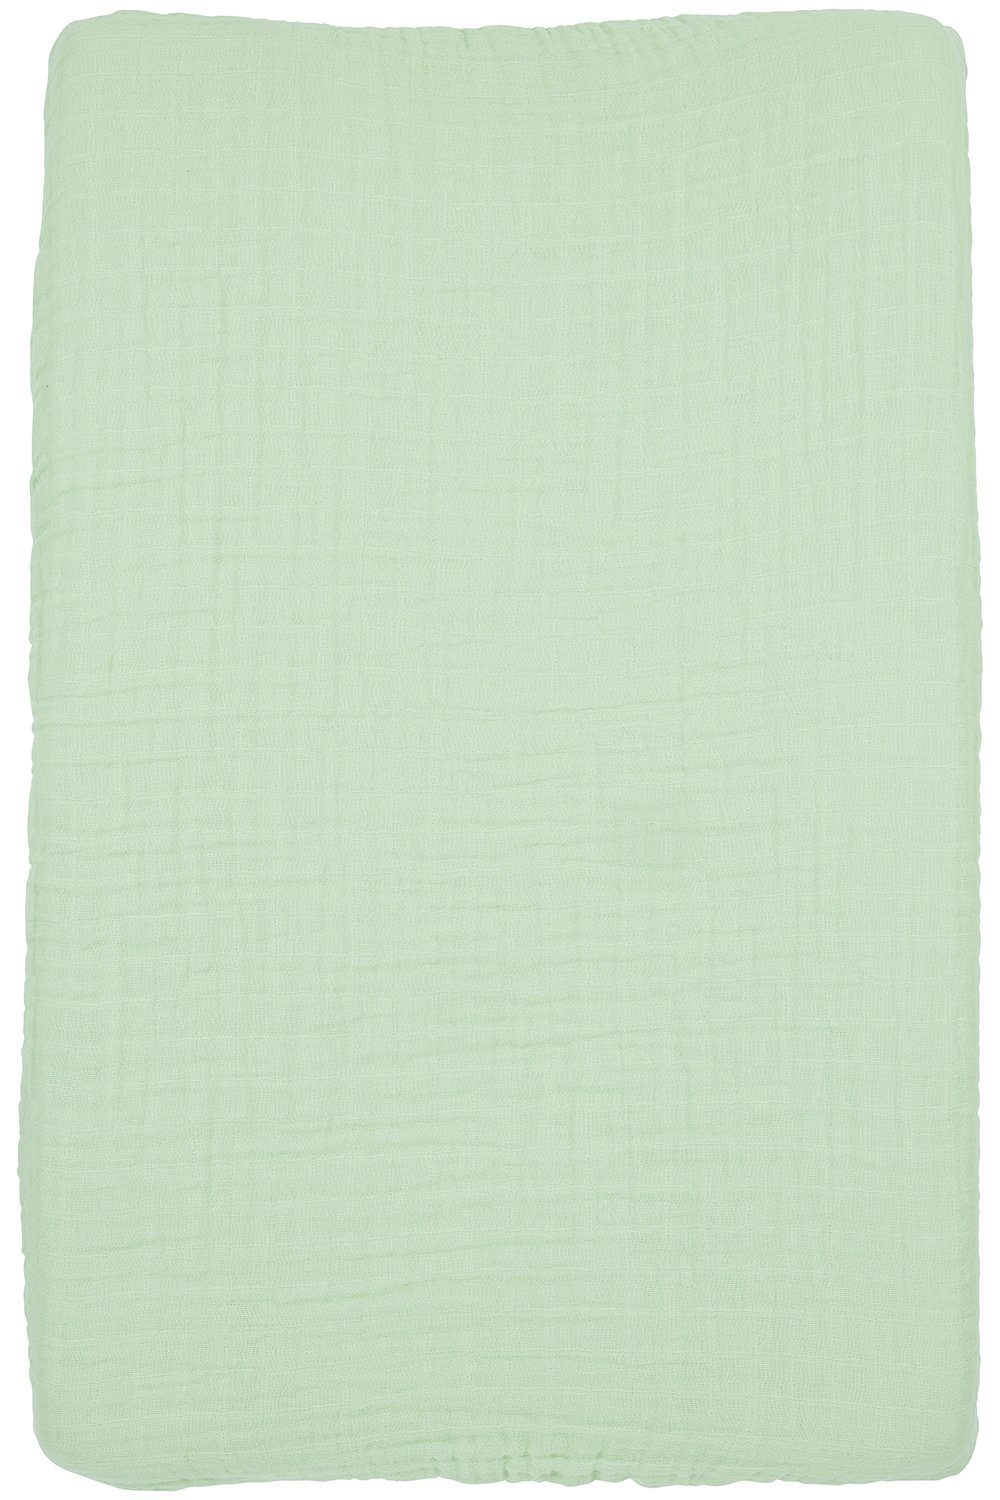 Uni Wickelauflagenbezug 50x70cm Soft (1-tlg), Baby Green Meyco